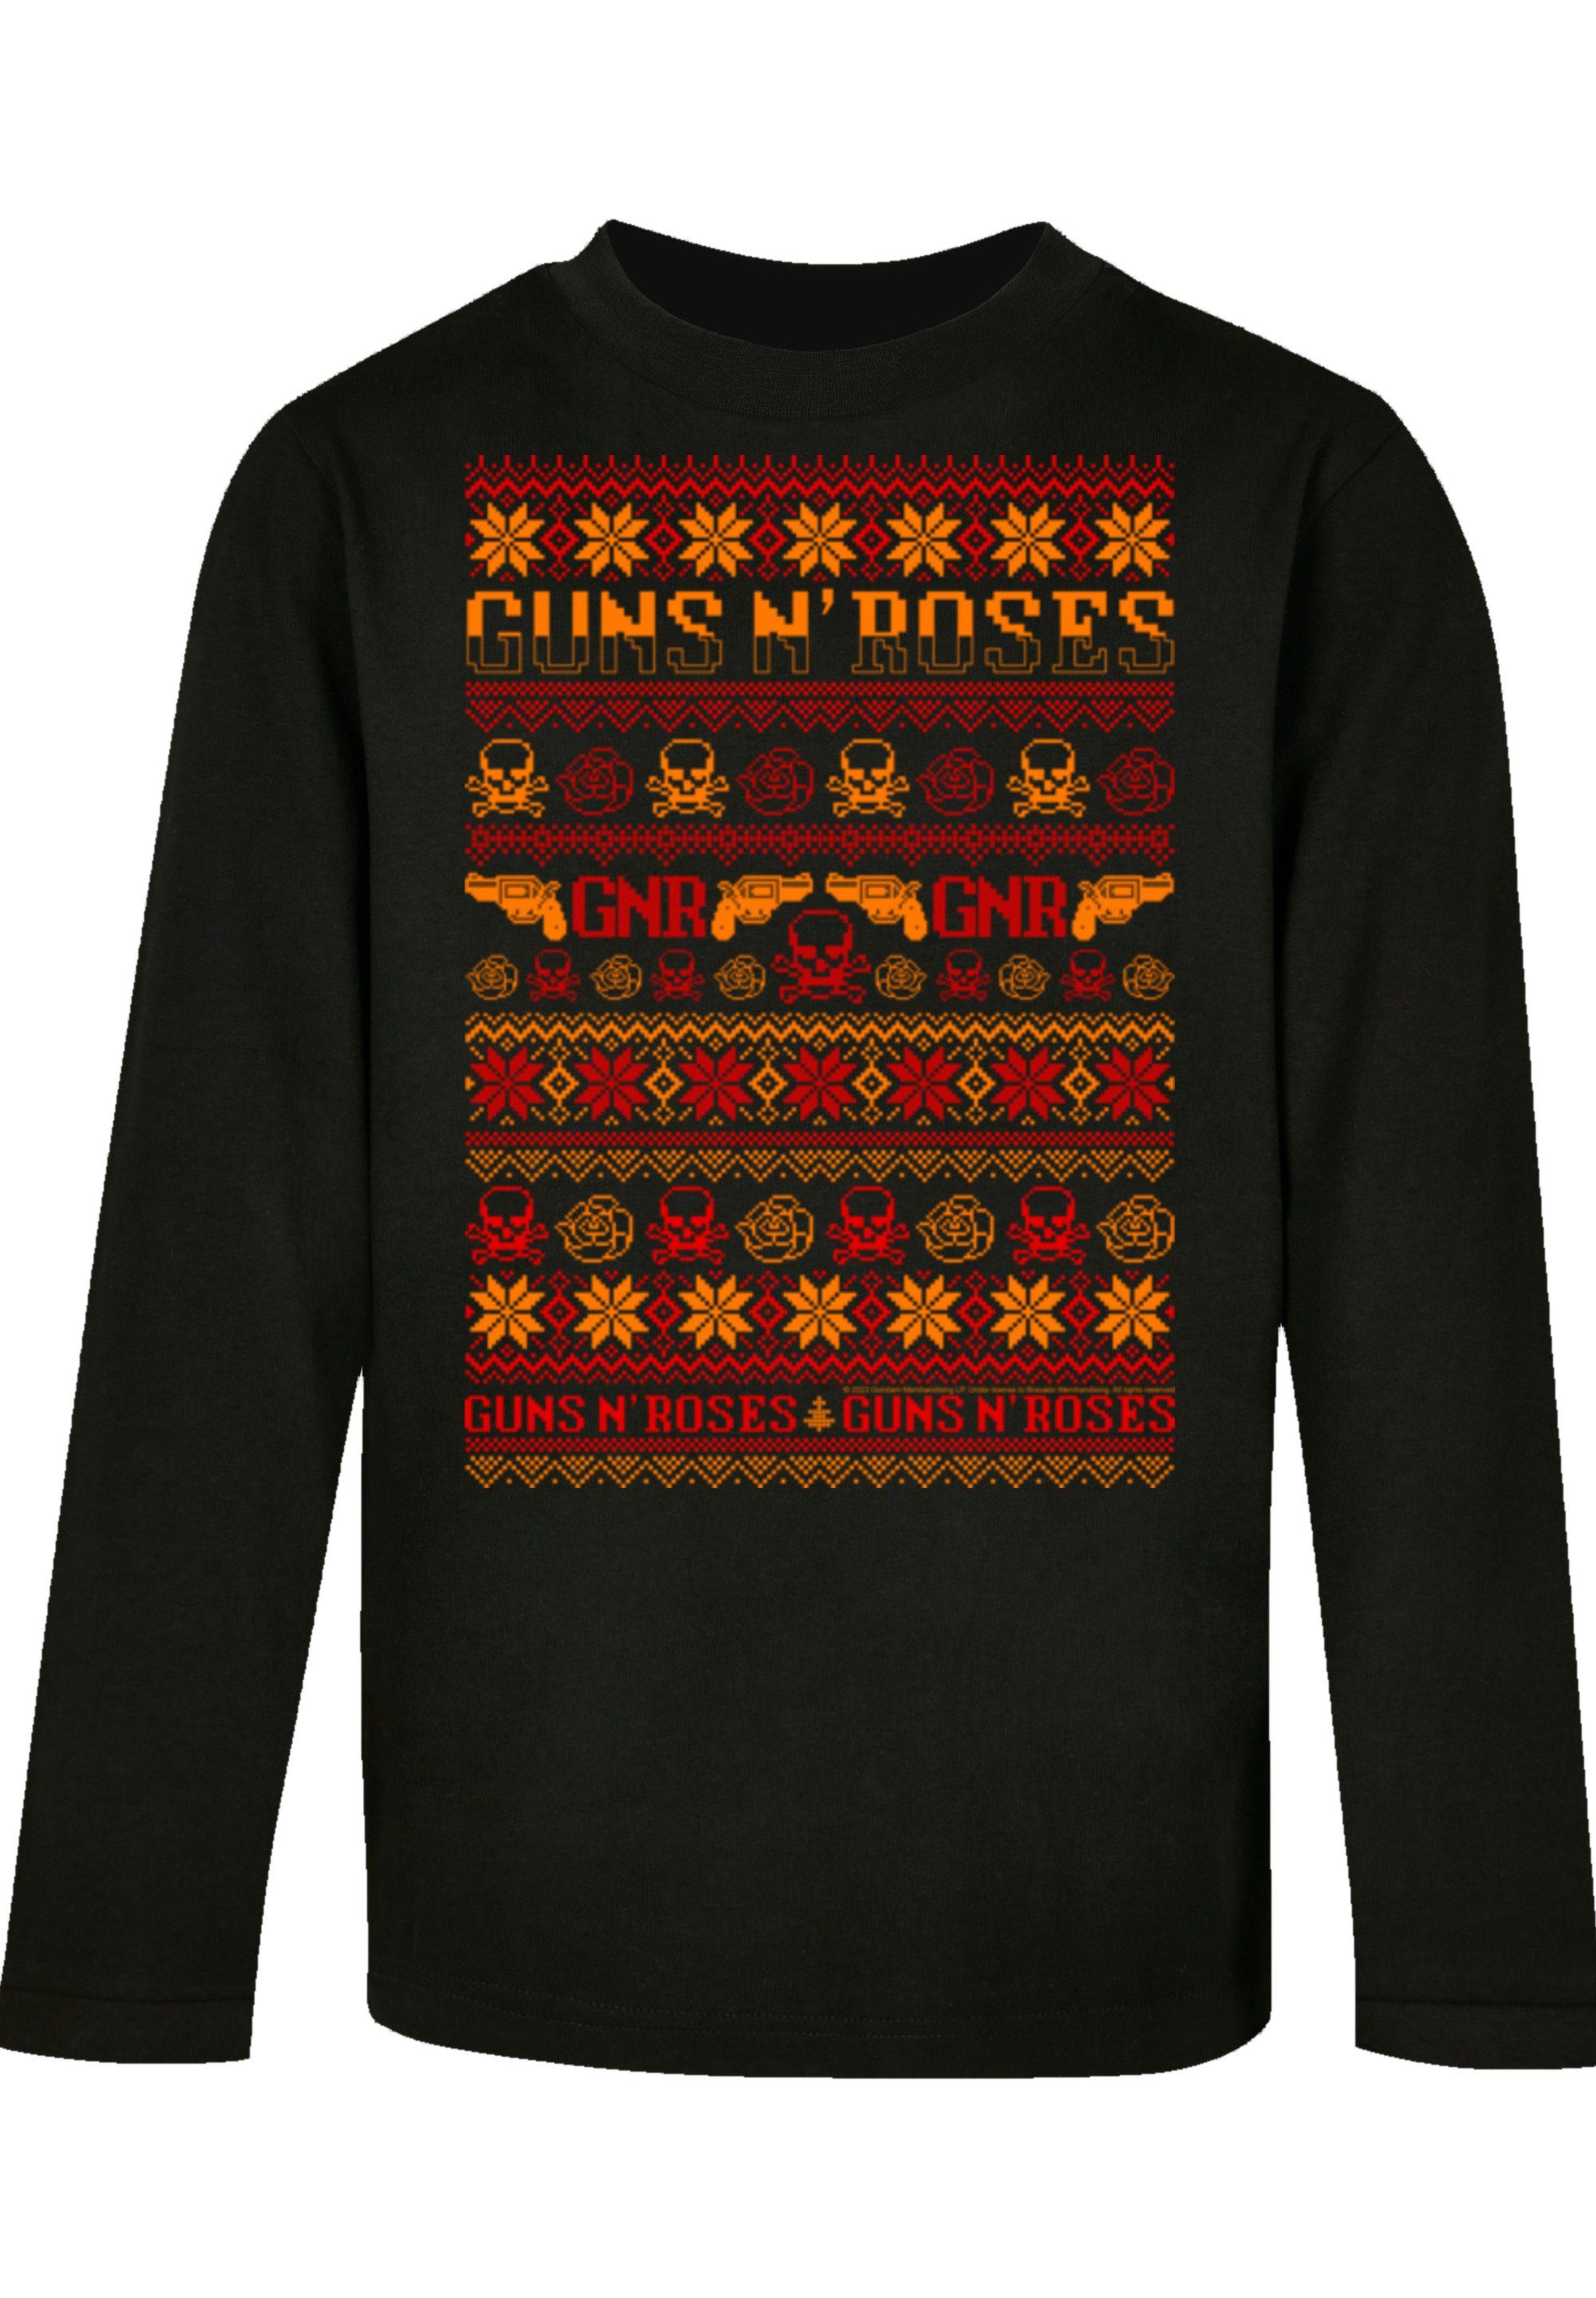 F4NT4STIC T-Shirt schwarz Weihnachten n' Musik,Band,Logo Roses Guns Christmas